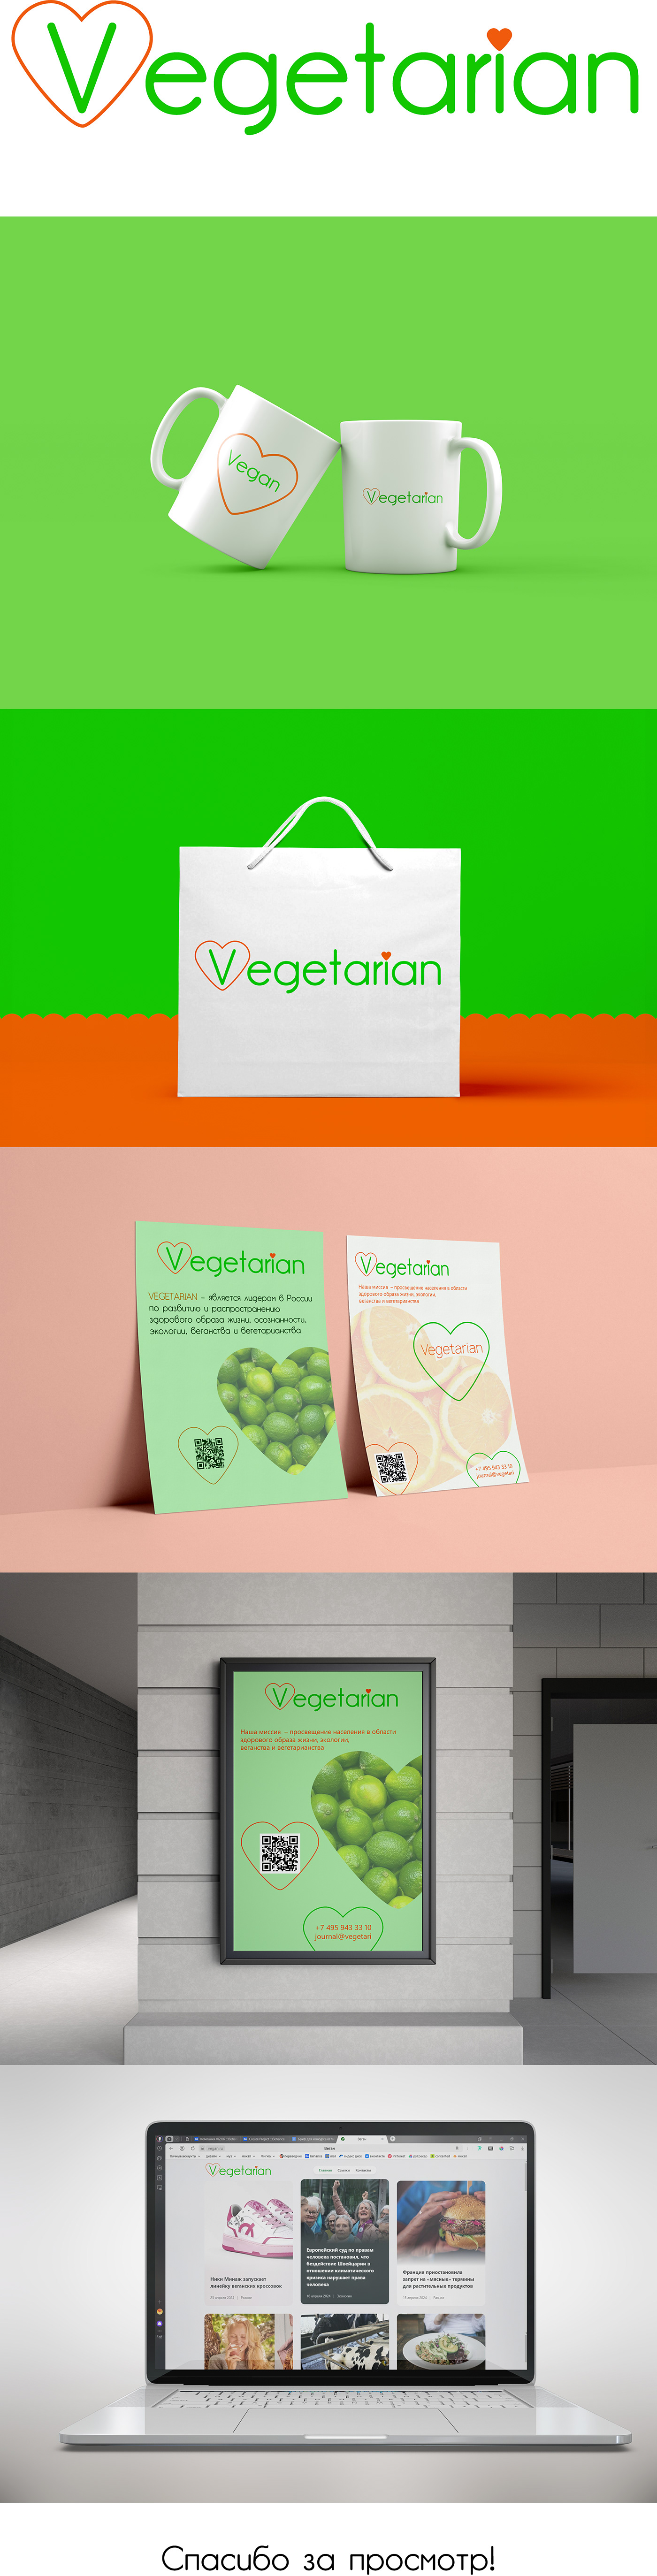 vegan Vegetarian logo Food  Logo Design branding 